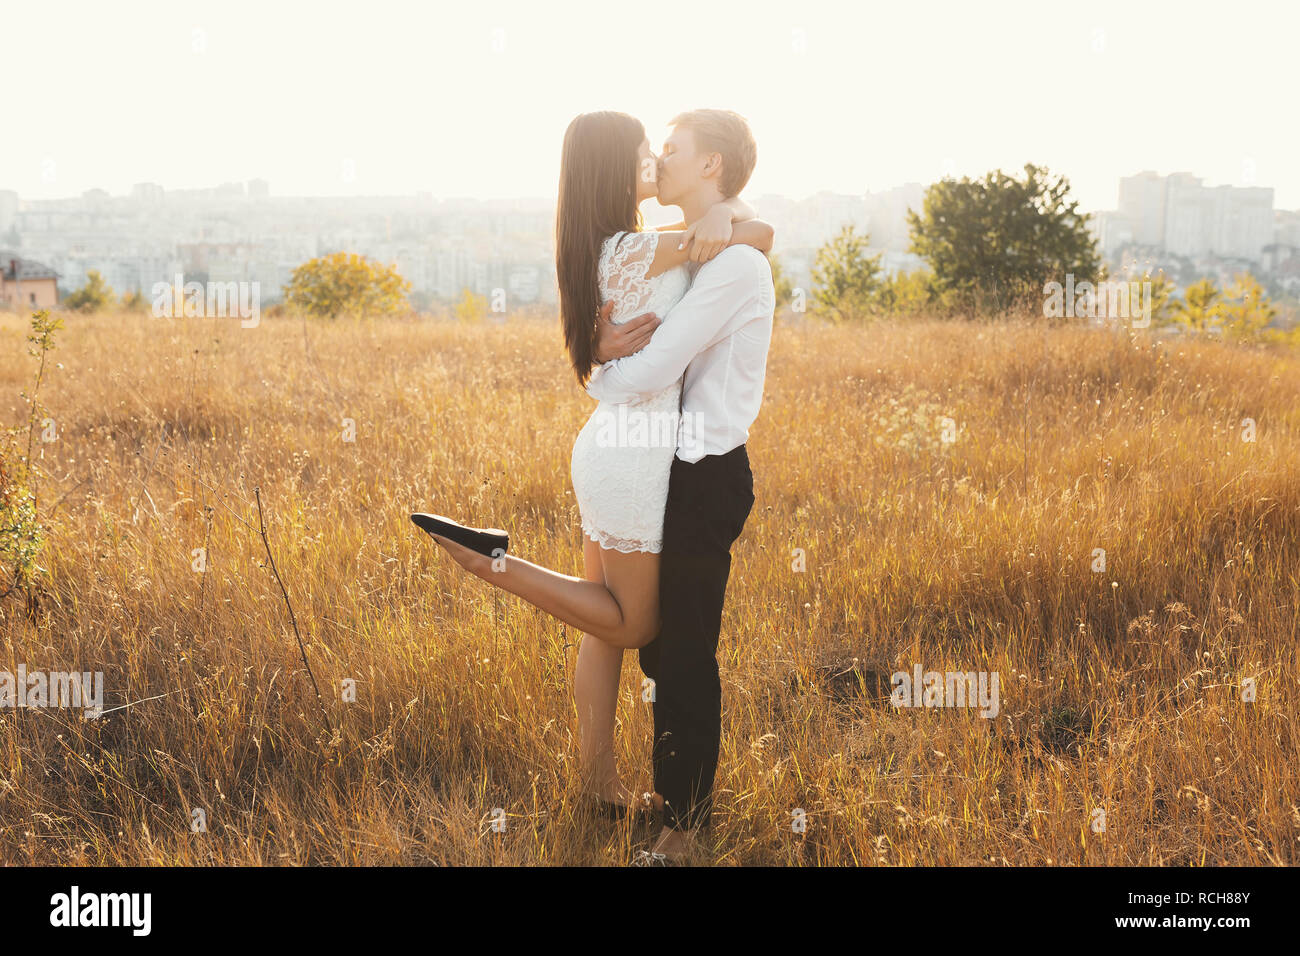 Couple aimant habillé en blanc à l'extérieur, s'embrasser, toucher doux les uns les autres avec un beau paysage en arrière-plan, l'herbe d'or - Concept de pe Banque D'Images